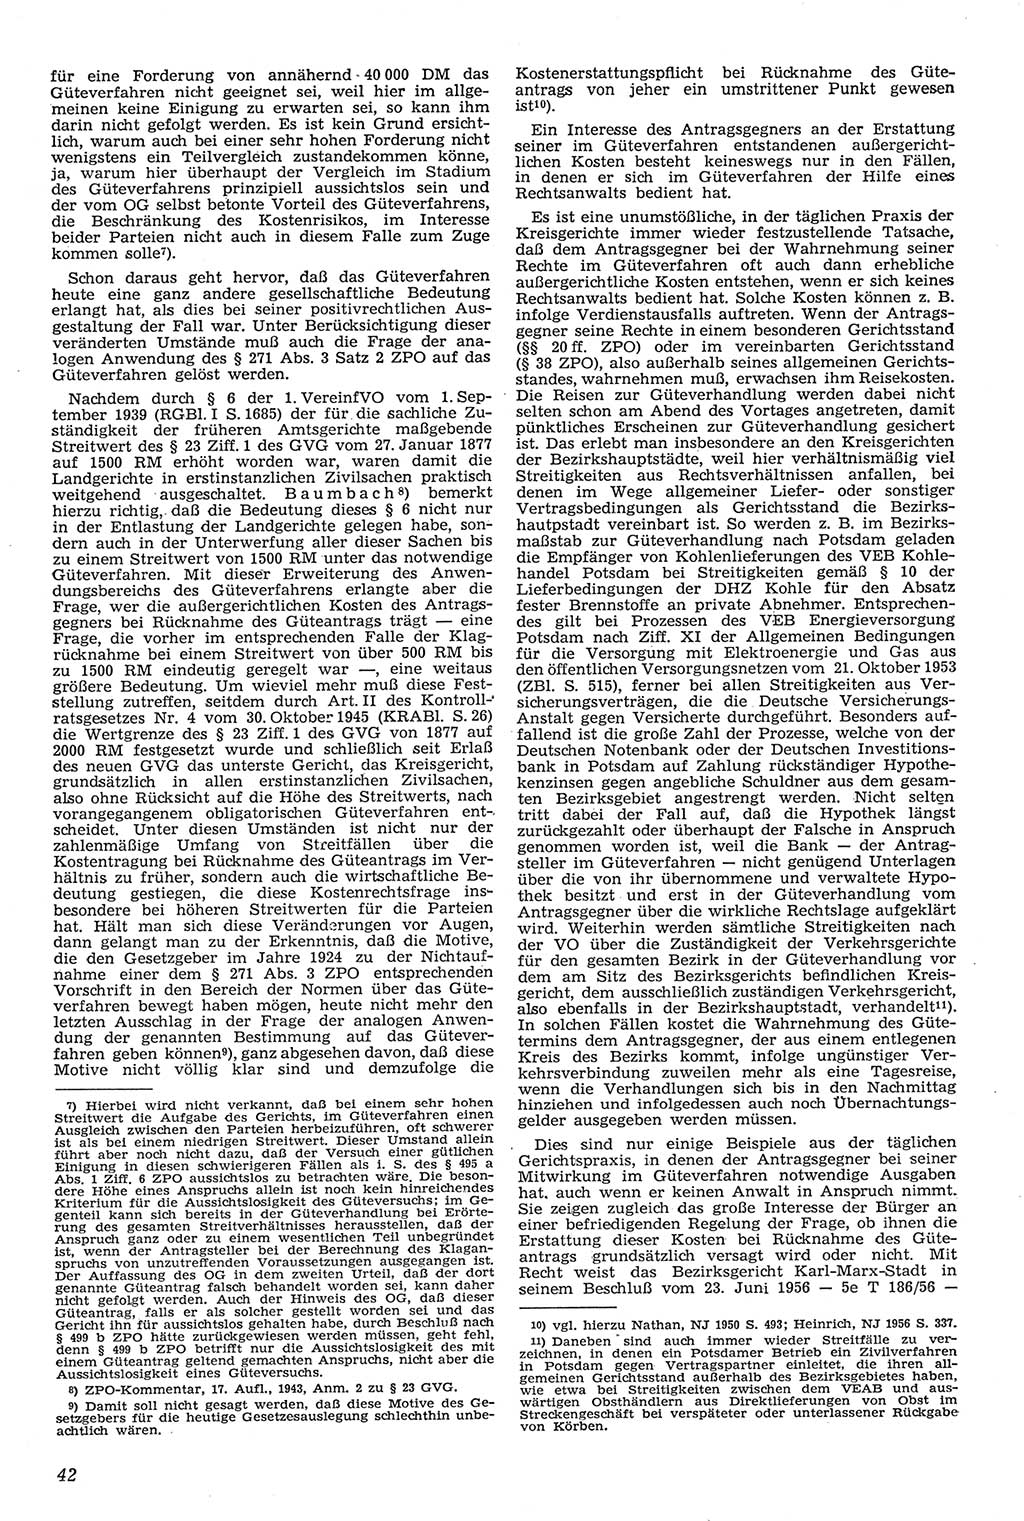 Neue Justiz (NJ), Zeitschrift für Recht und Rechtswissenschaft [Deutsche Demokratische Republik (DDR)], 11. Jahrgang 1957, Seite 42 (NJ DDR 1957, S. 42)